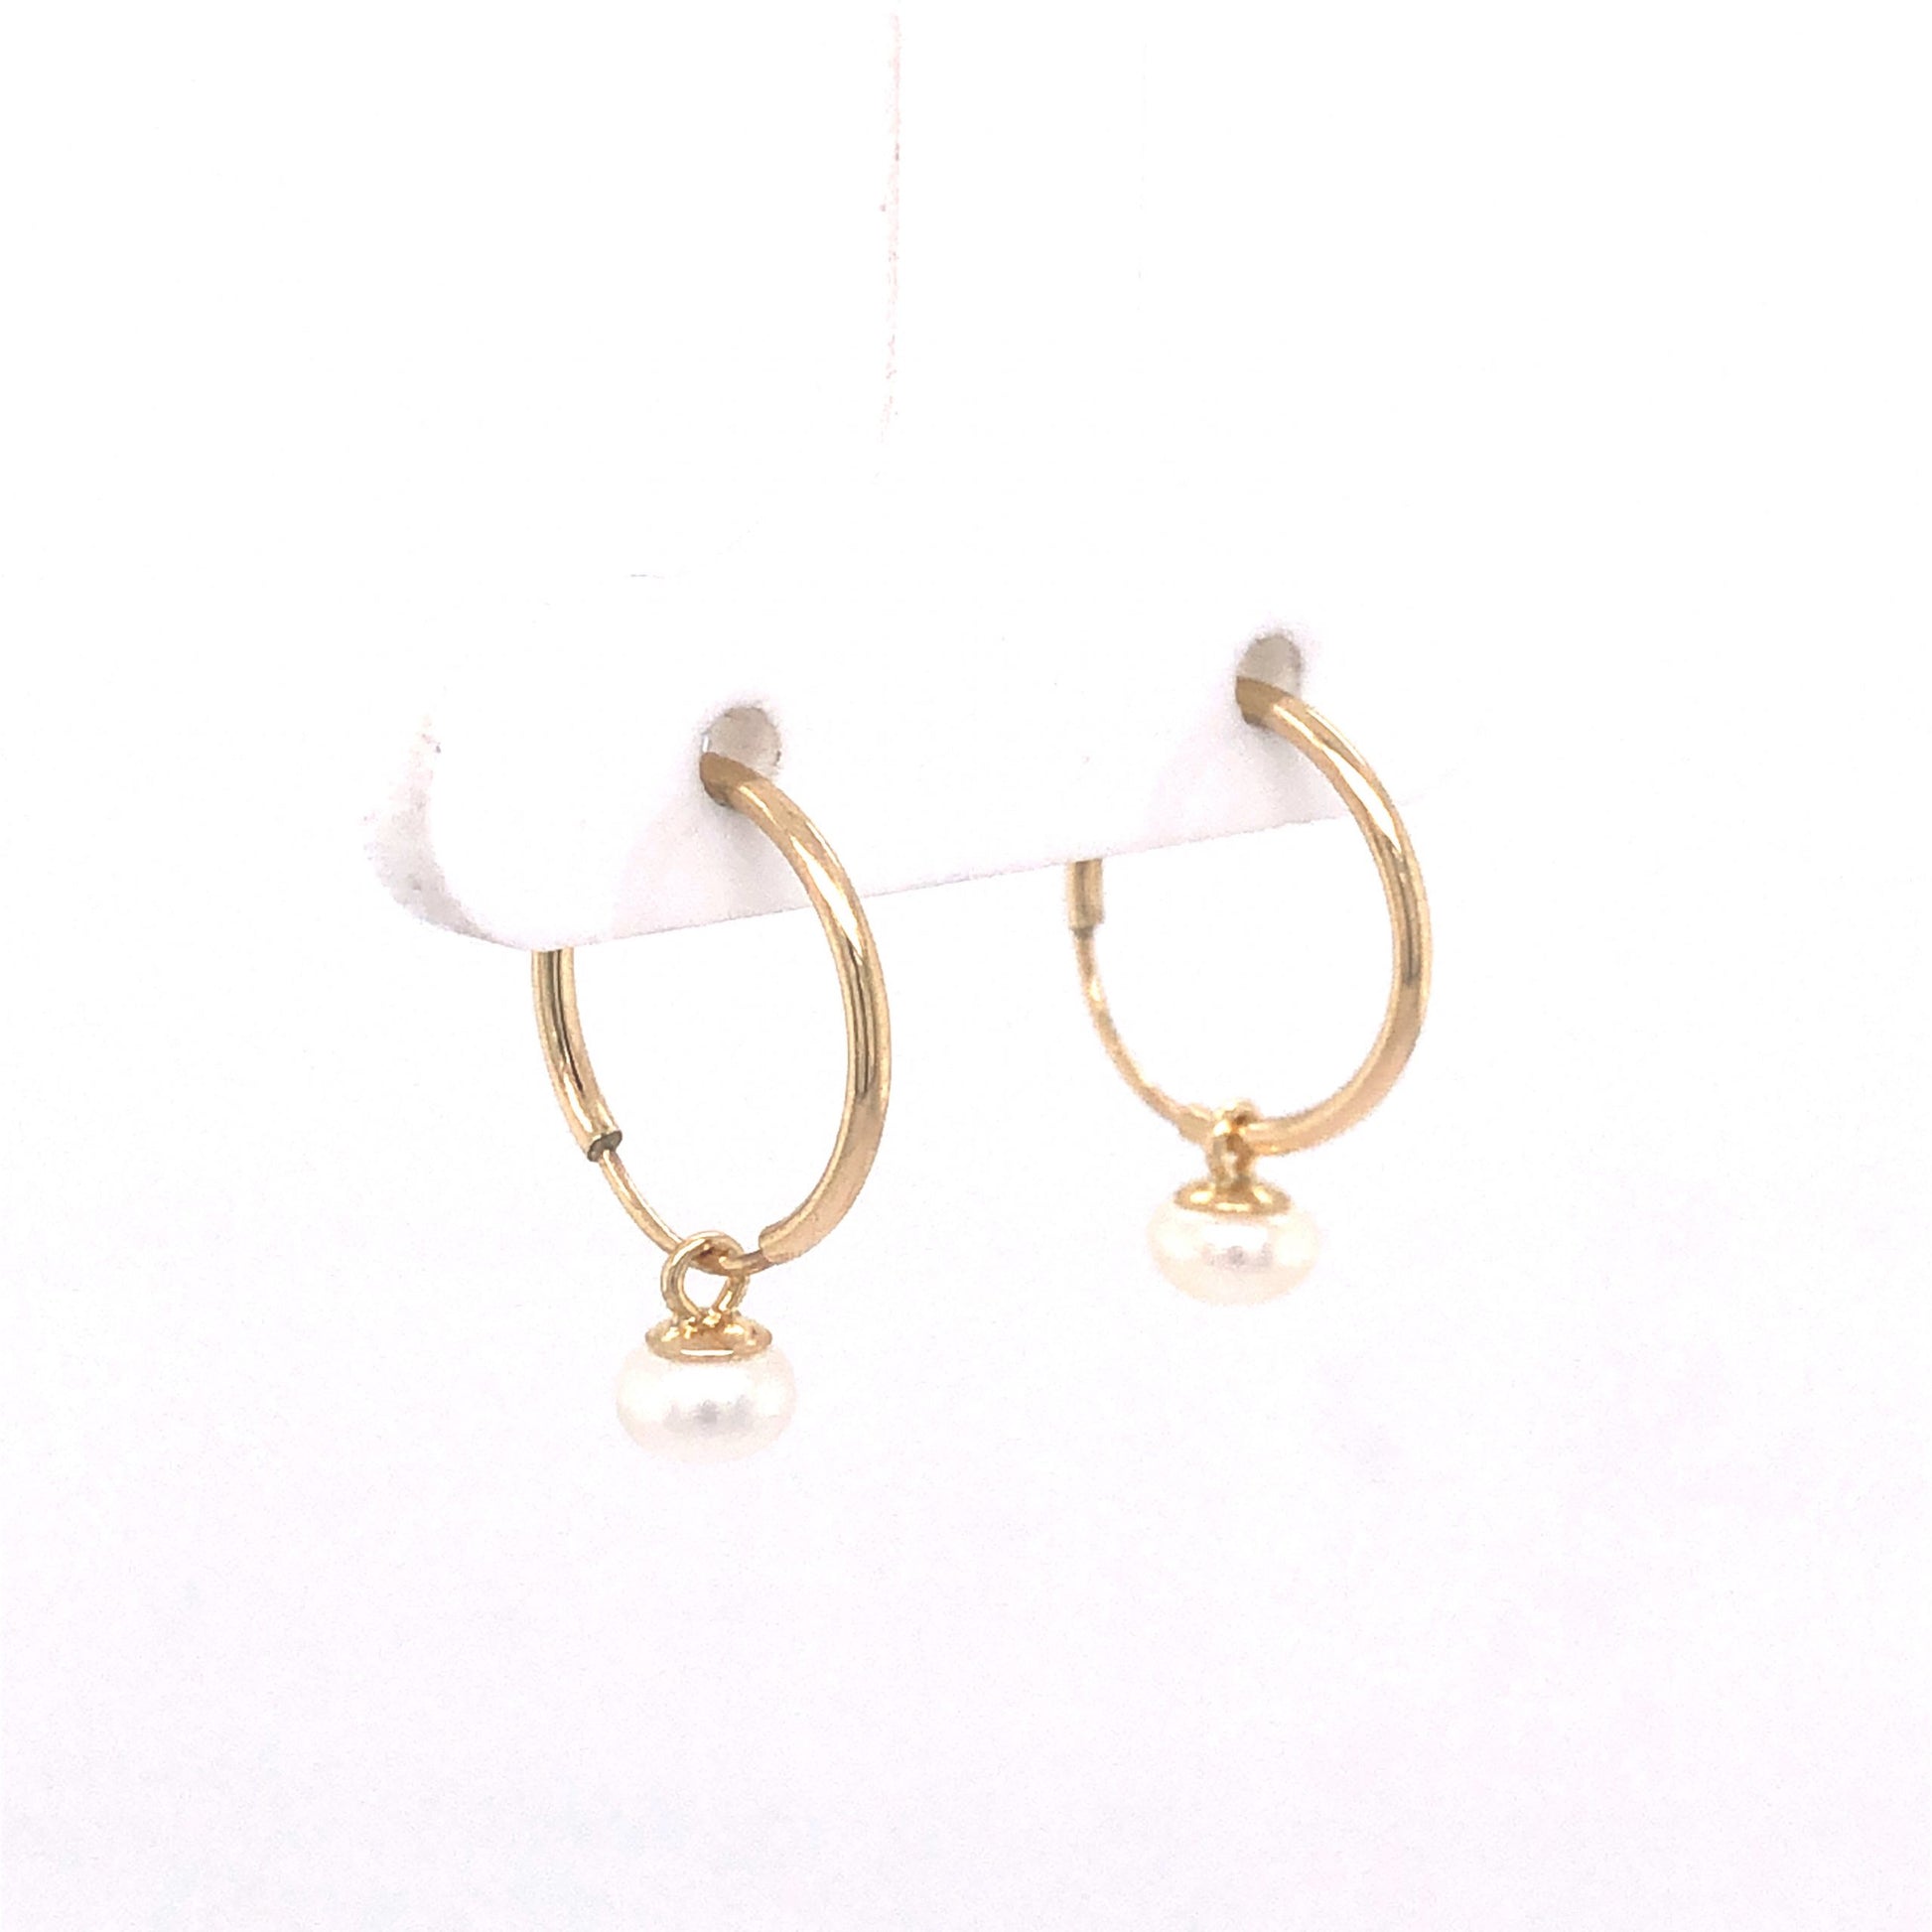 Pearl Hoop Earrings in 14k Yellow Gold